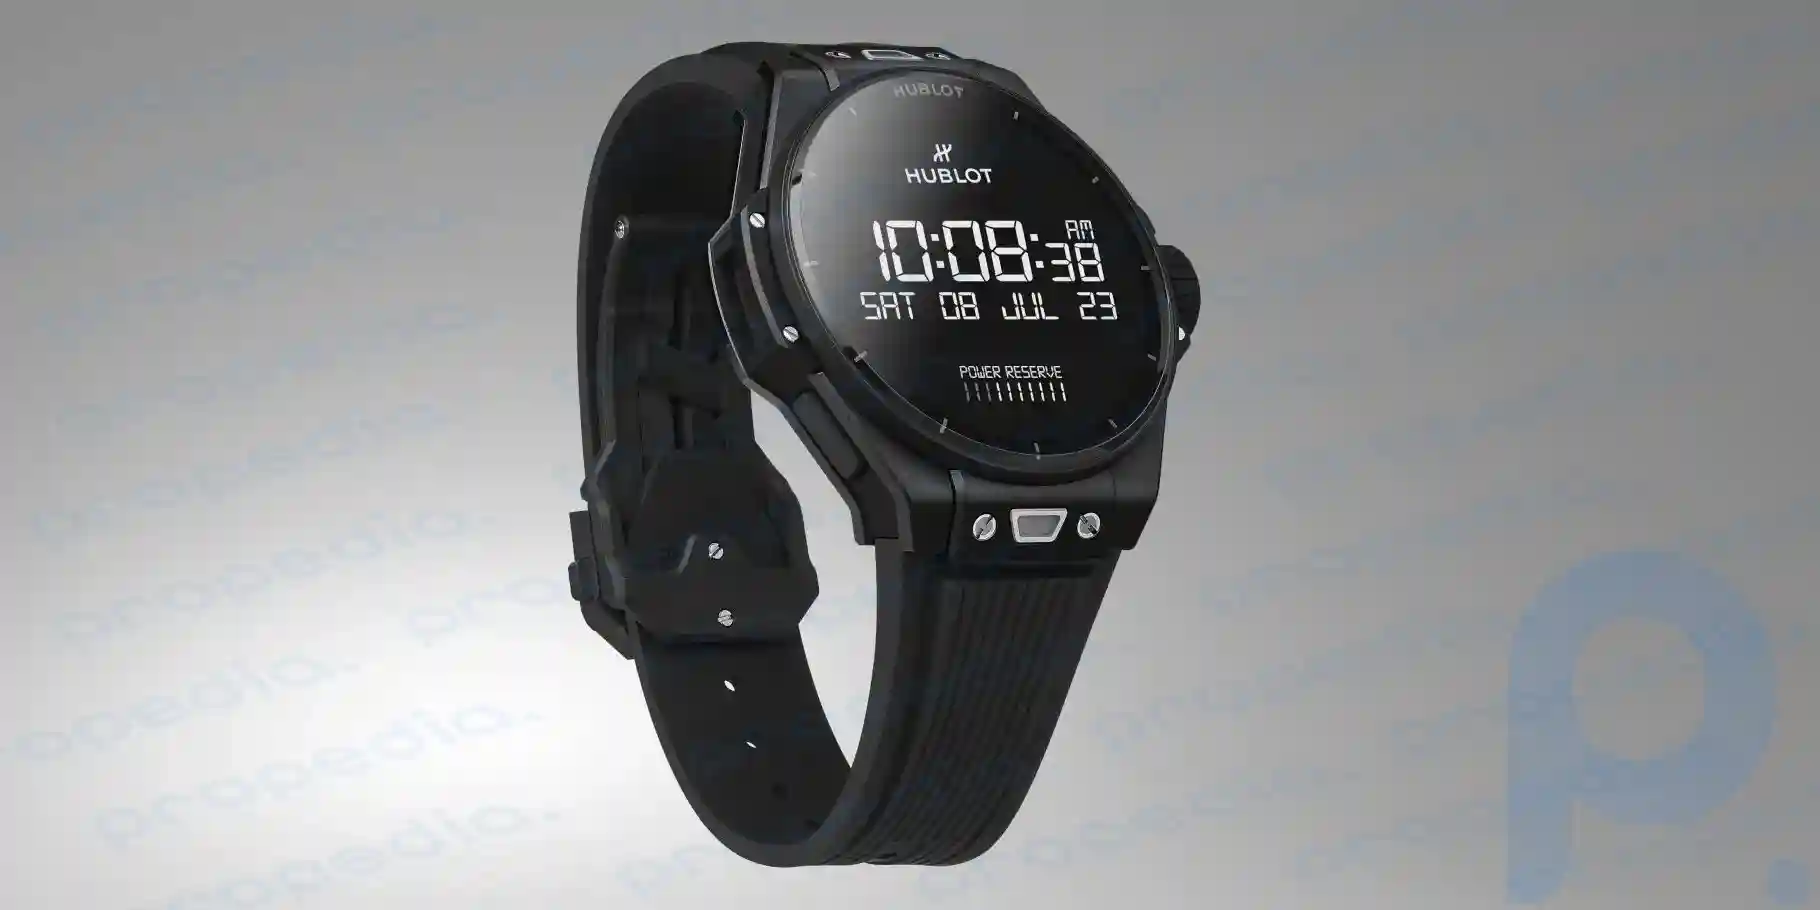 La marca suiza Hublot ha lanzado el reloj inteligente Bing Bang E Gen 3 con Wear OS de Google